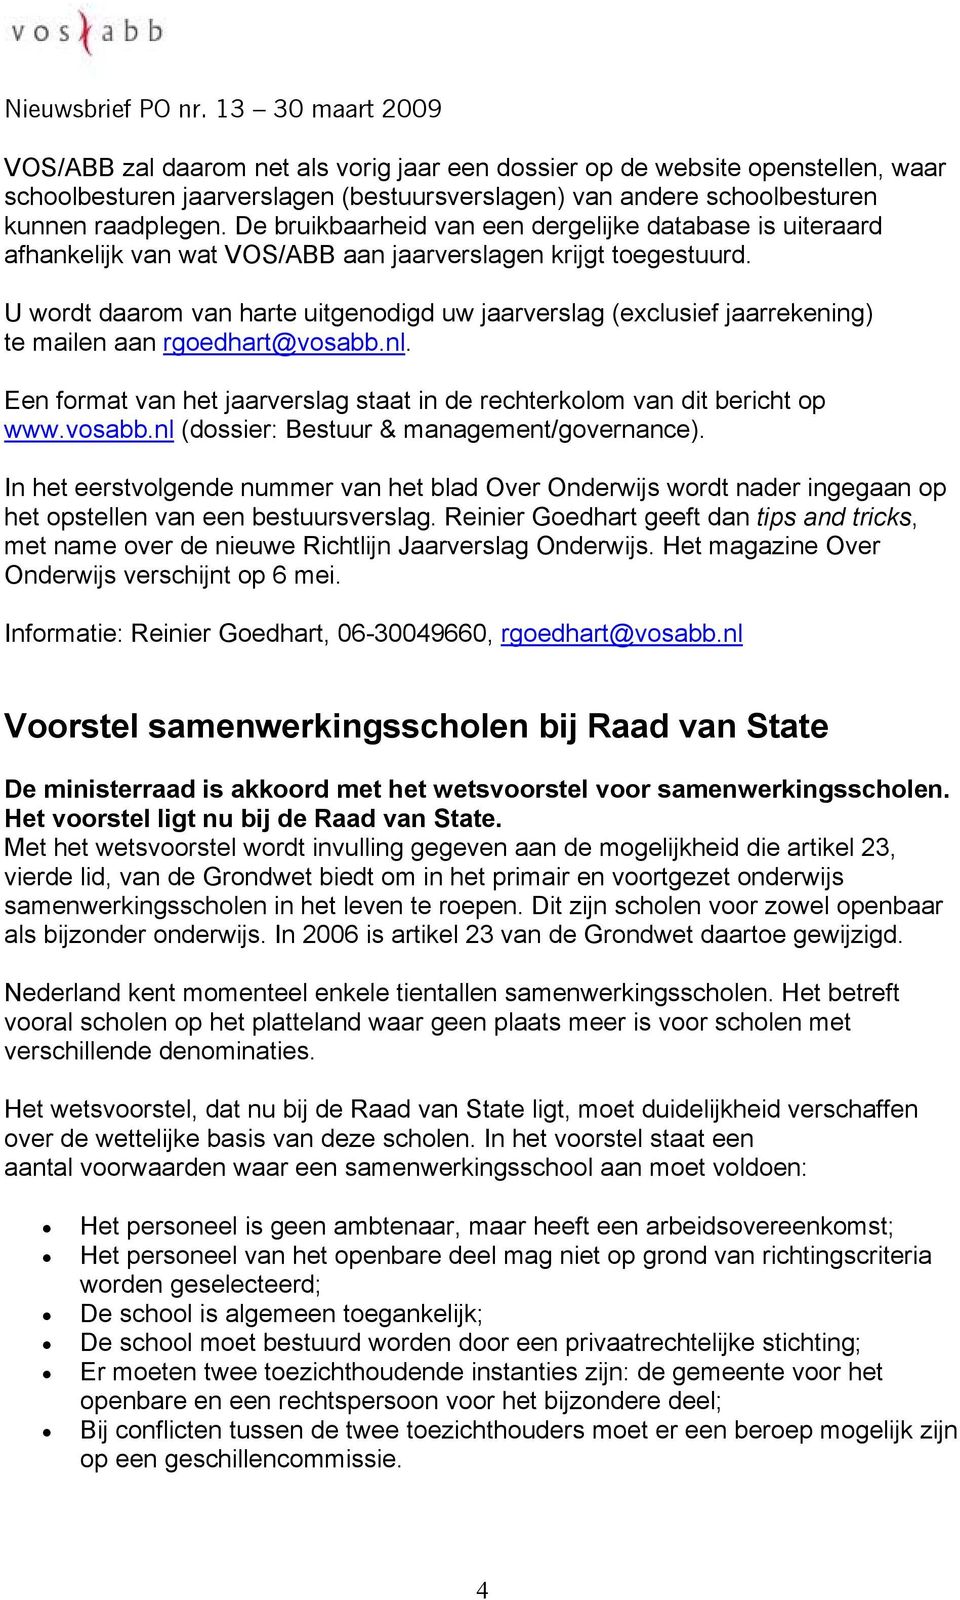 U wordt daarom van harte uitgenodigd uw jaarverslag (exclusief jaarrekening) te mailen aan rgoedhart@vosabb.nl. Een format van het jaarverslag staat in de rechterkolom van dit bericht op www.vosabb.nl (dossier: Bestuur & management/governance).